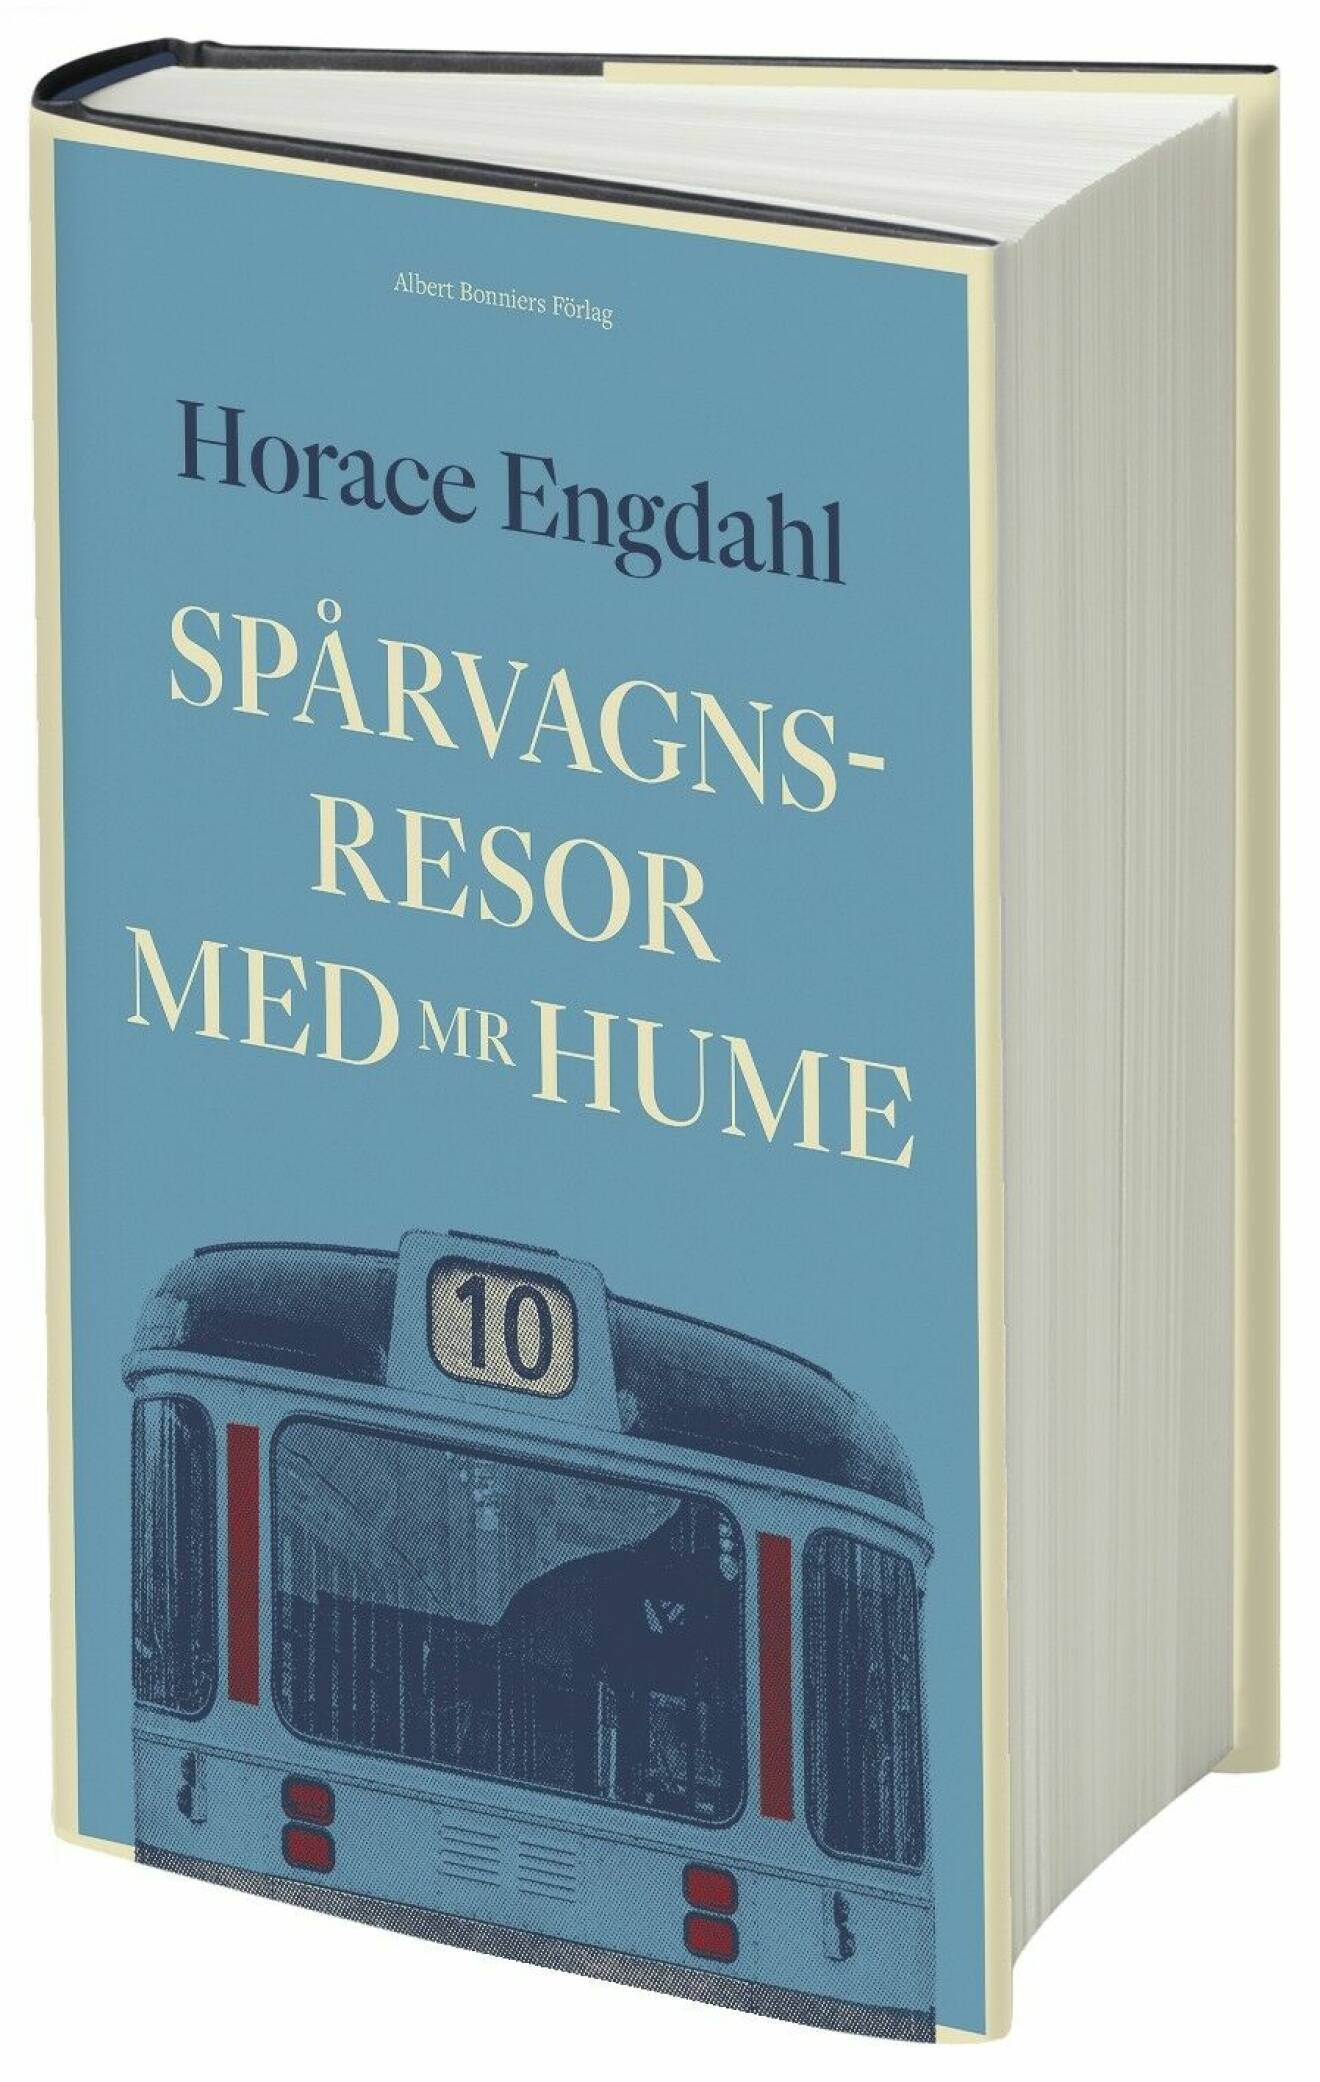 Spårvagnsresor med Mr Hume av Horace Engdahl (Albert Bonniers förlag).